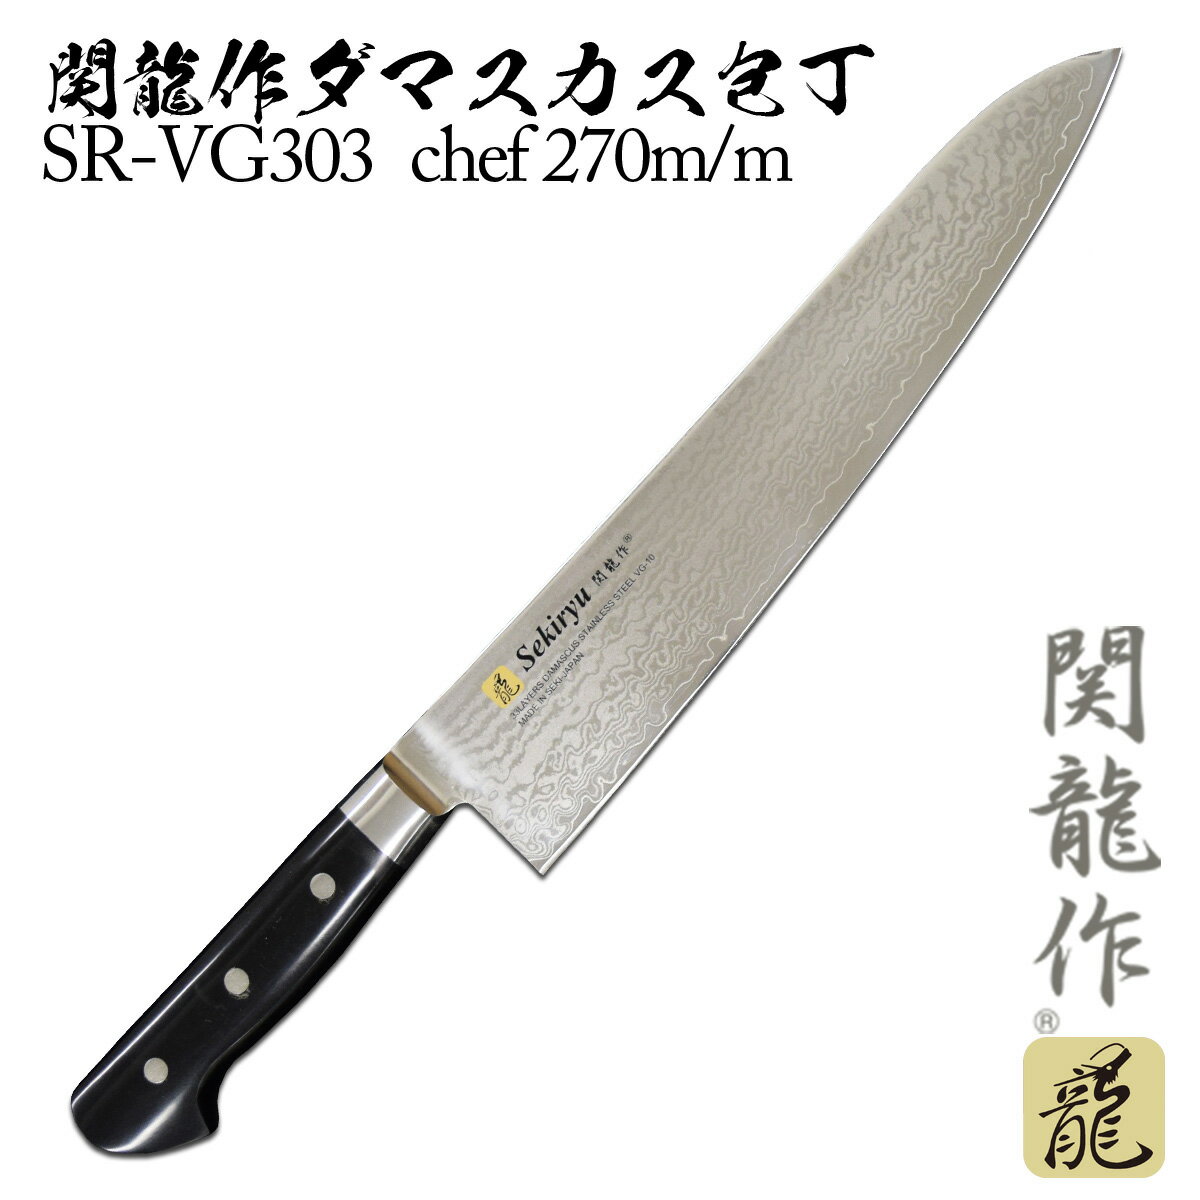 関龍作 ダマスカス包丁 chef SR-VG303 270m